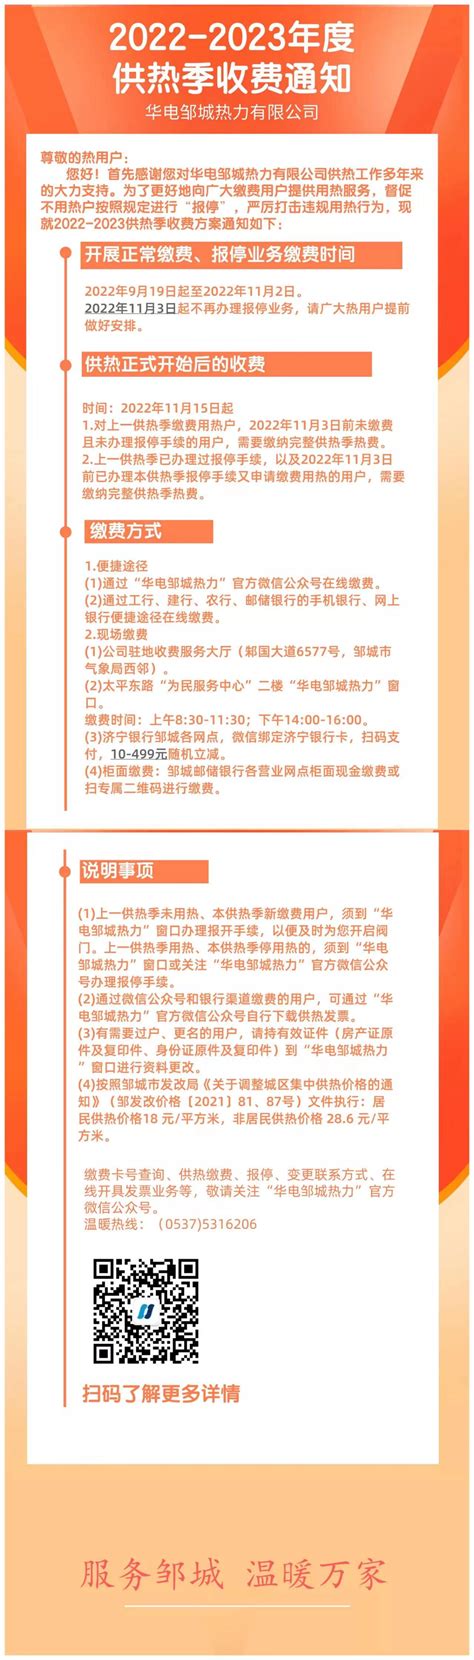 济宁市人民政府 价格收费 2022-2023年度供热季收费通知